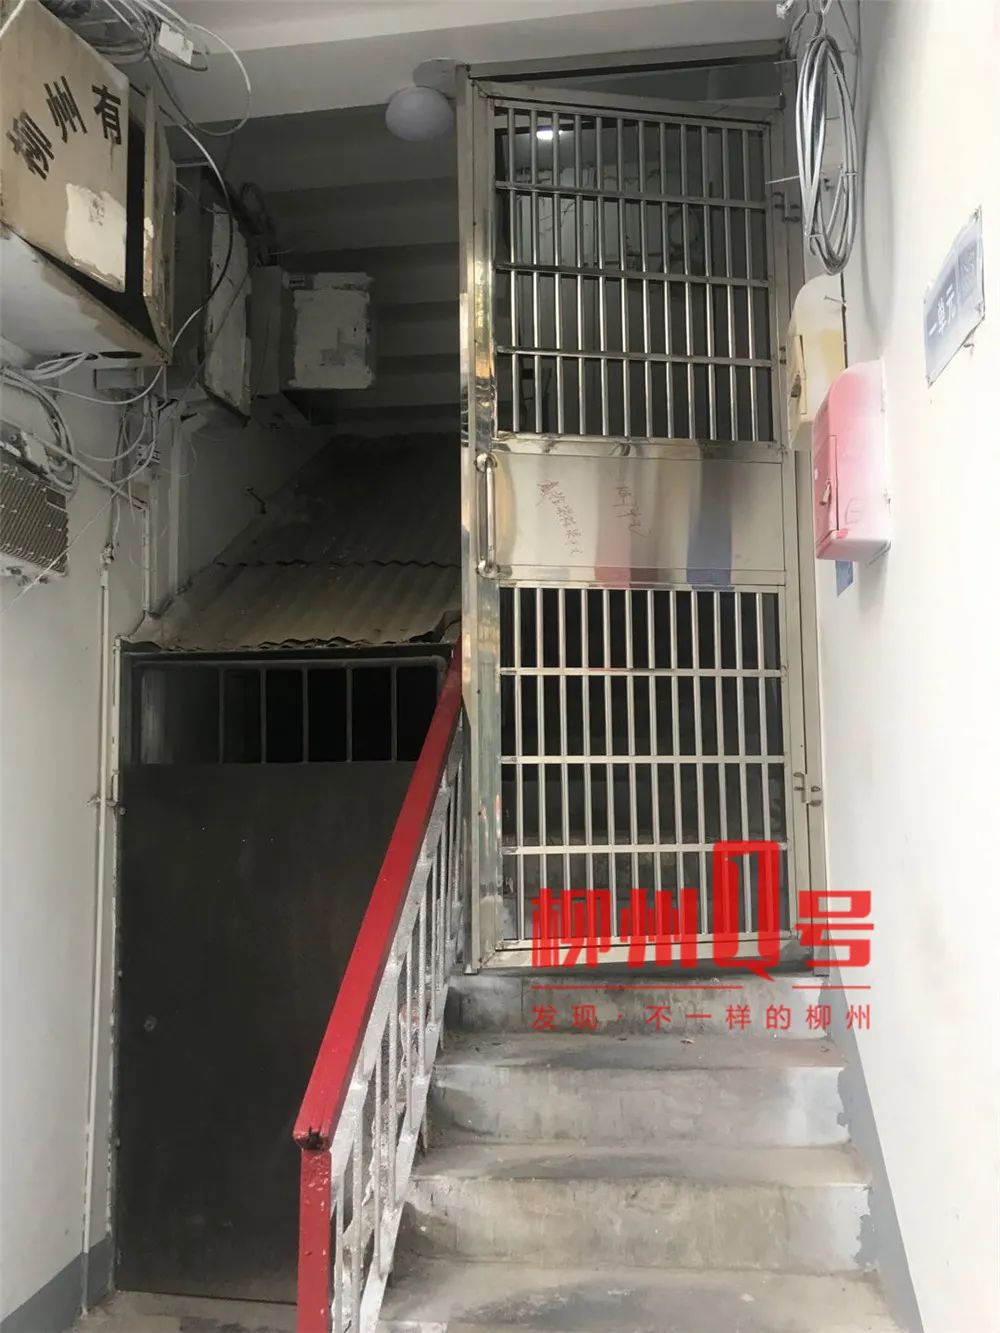 柳锌小区改造时安防盗门在楼梯上,离地约1.5米高,居民